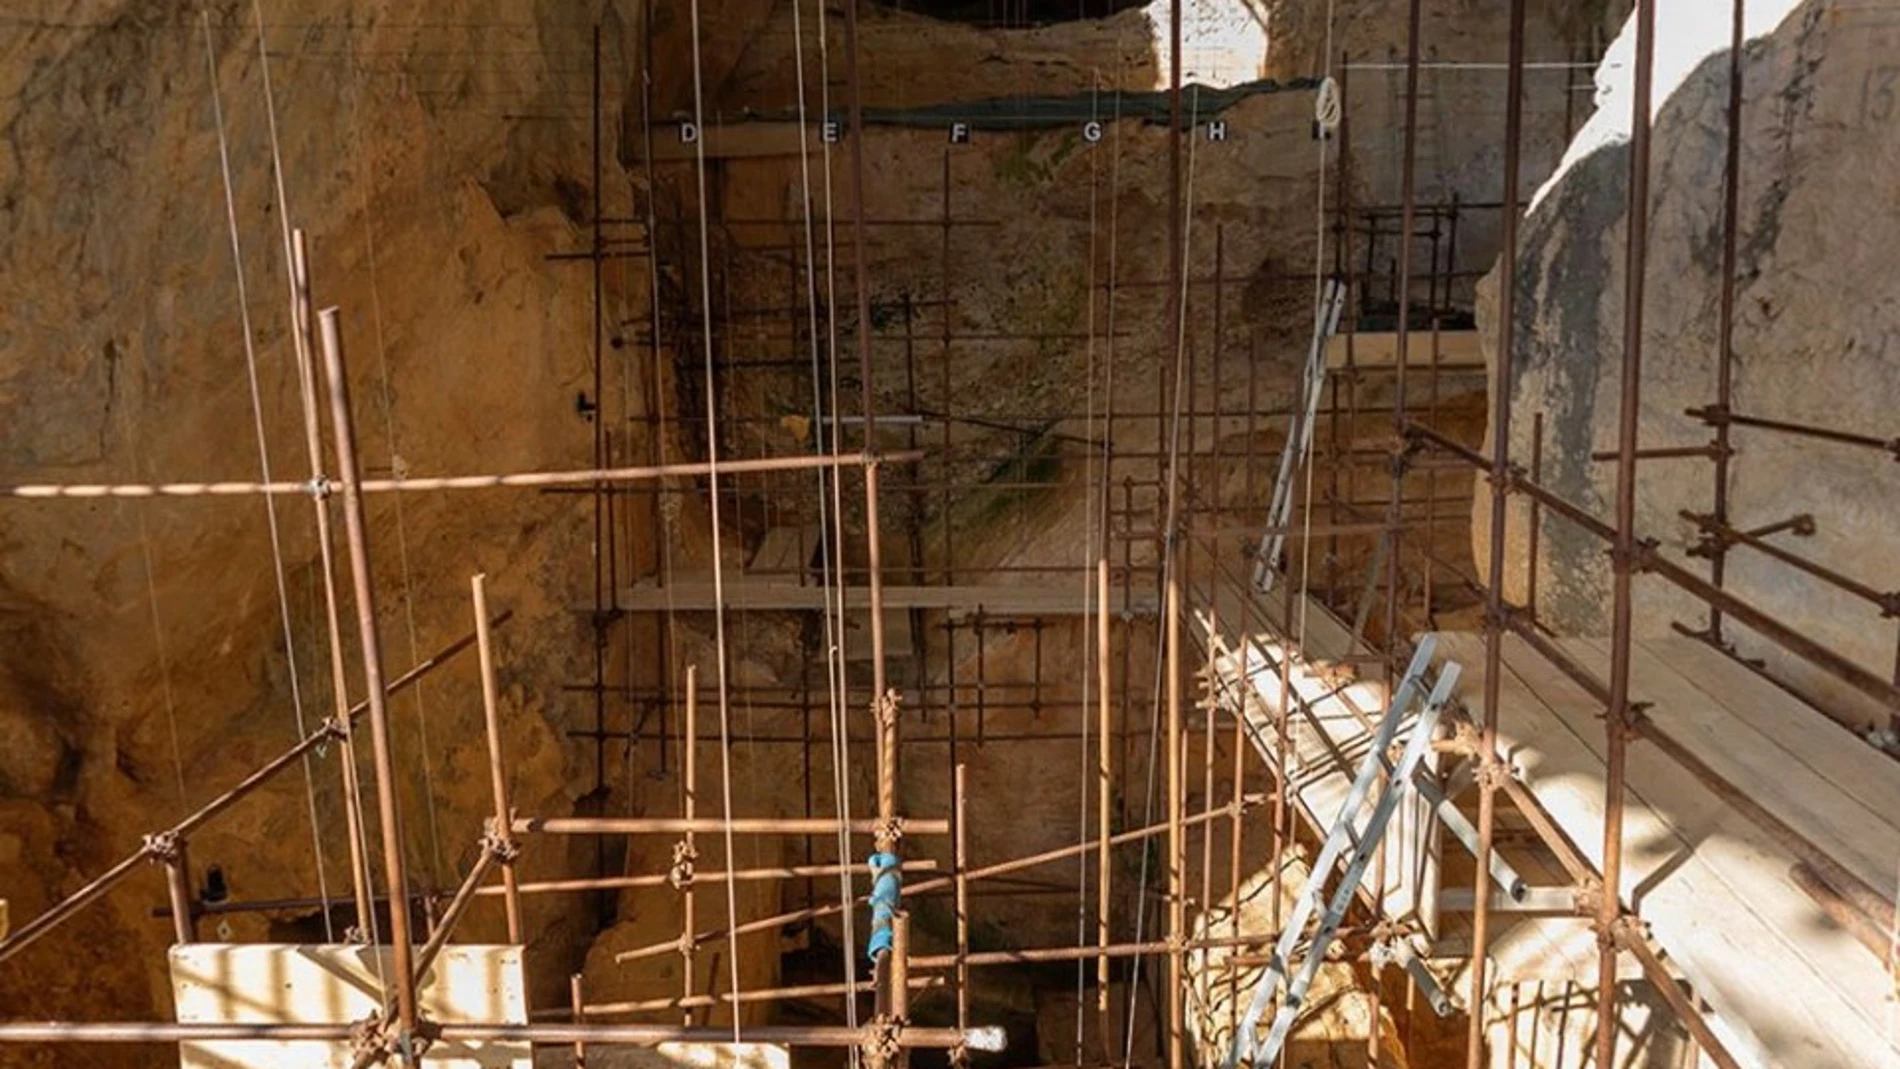 Imagen de la cueva de Tautavel difundida en twitter por el Musée de Préhistoire de Tautavel